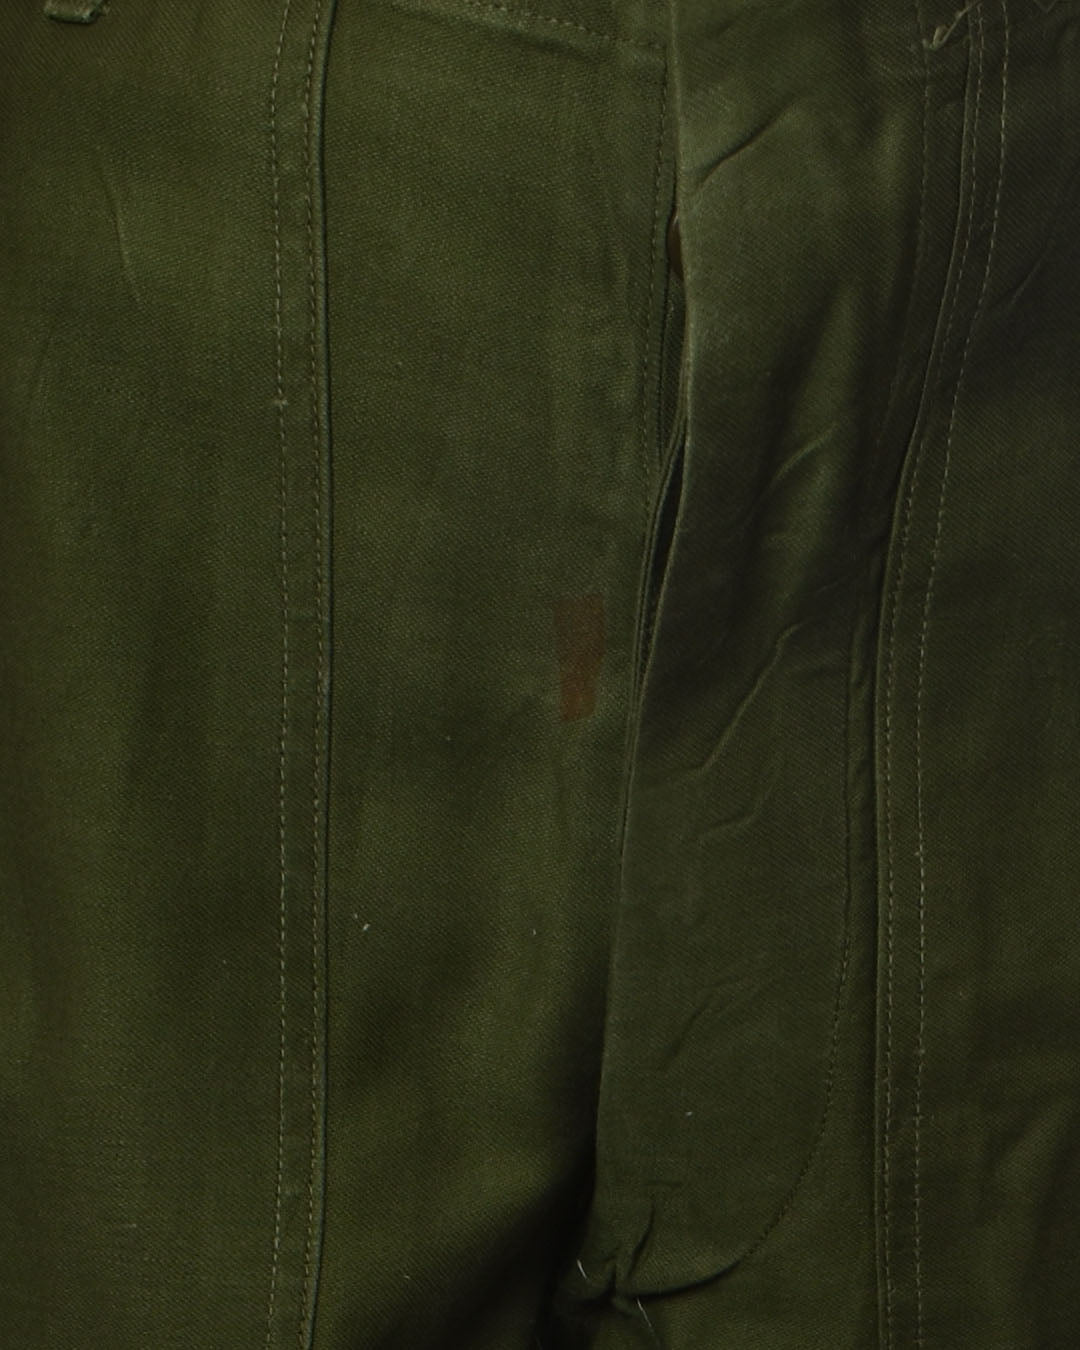 Vintage Vietnam War Army Pants - 60s / 70s - 27" Waist - 27 x 31